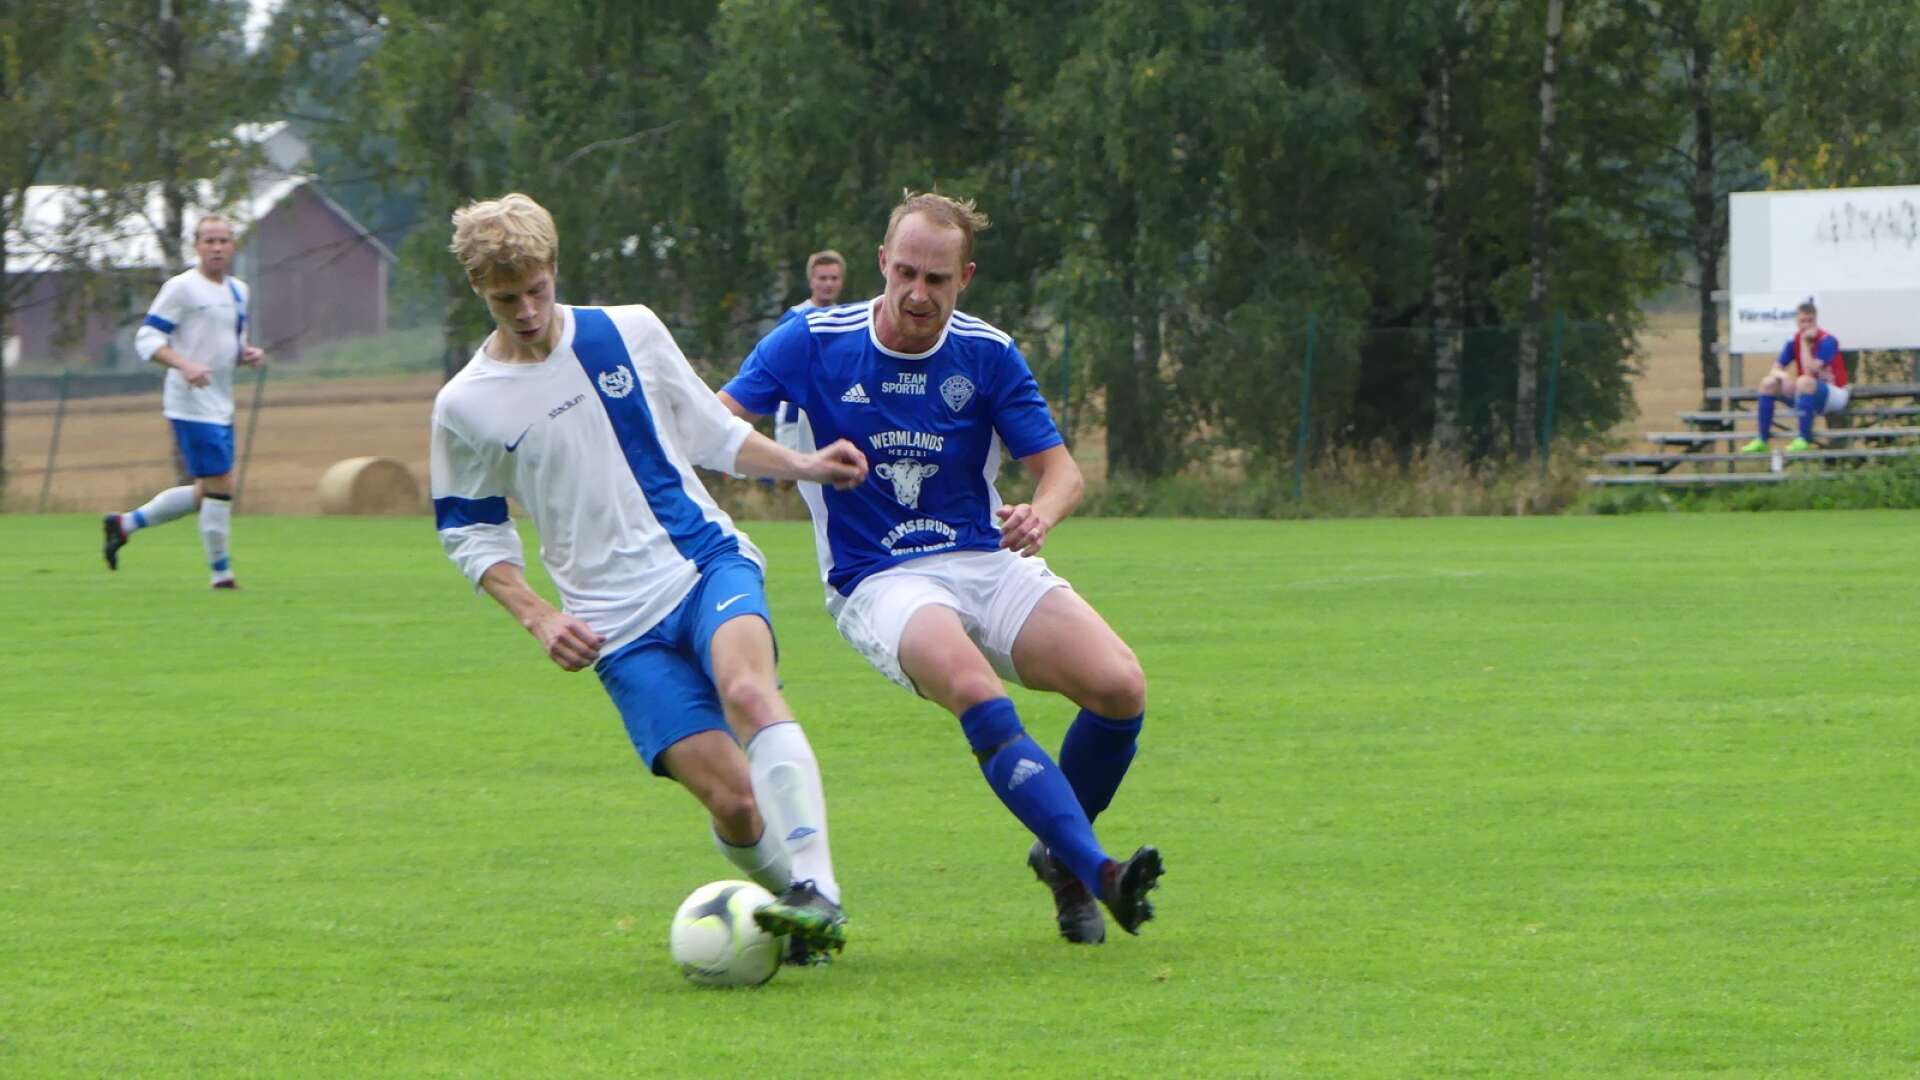 Det blev en jätteviktig trepoängare för Gillberga i matchen mot Slottsbron i fredags. Fredrik Alm stod för hemmalagets alla tre mål. 